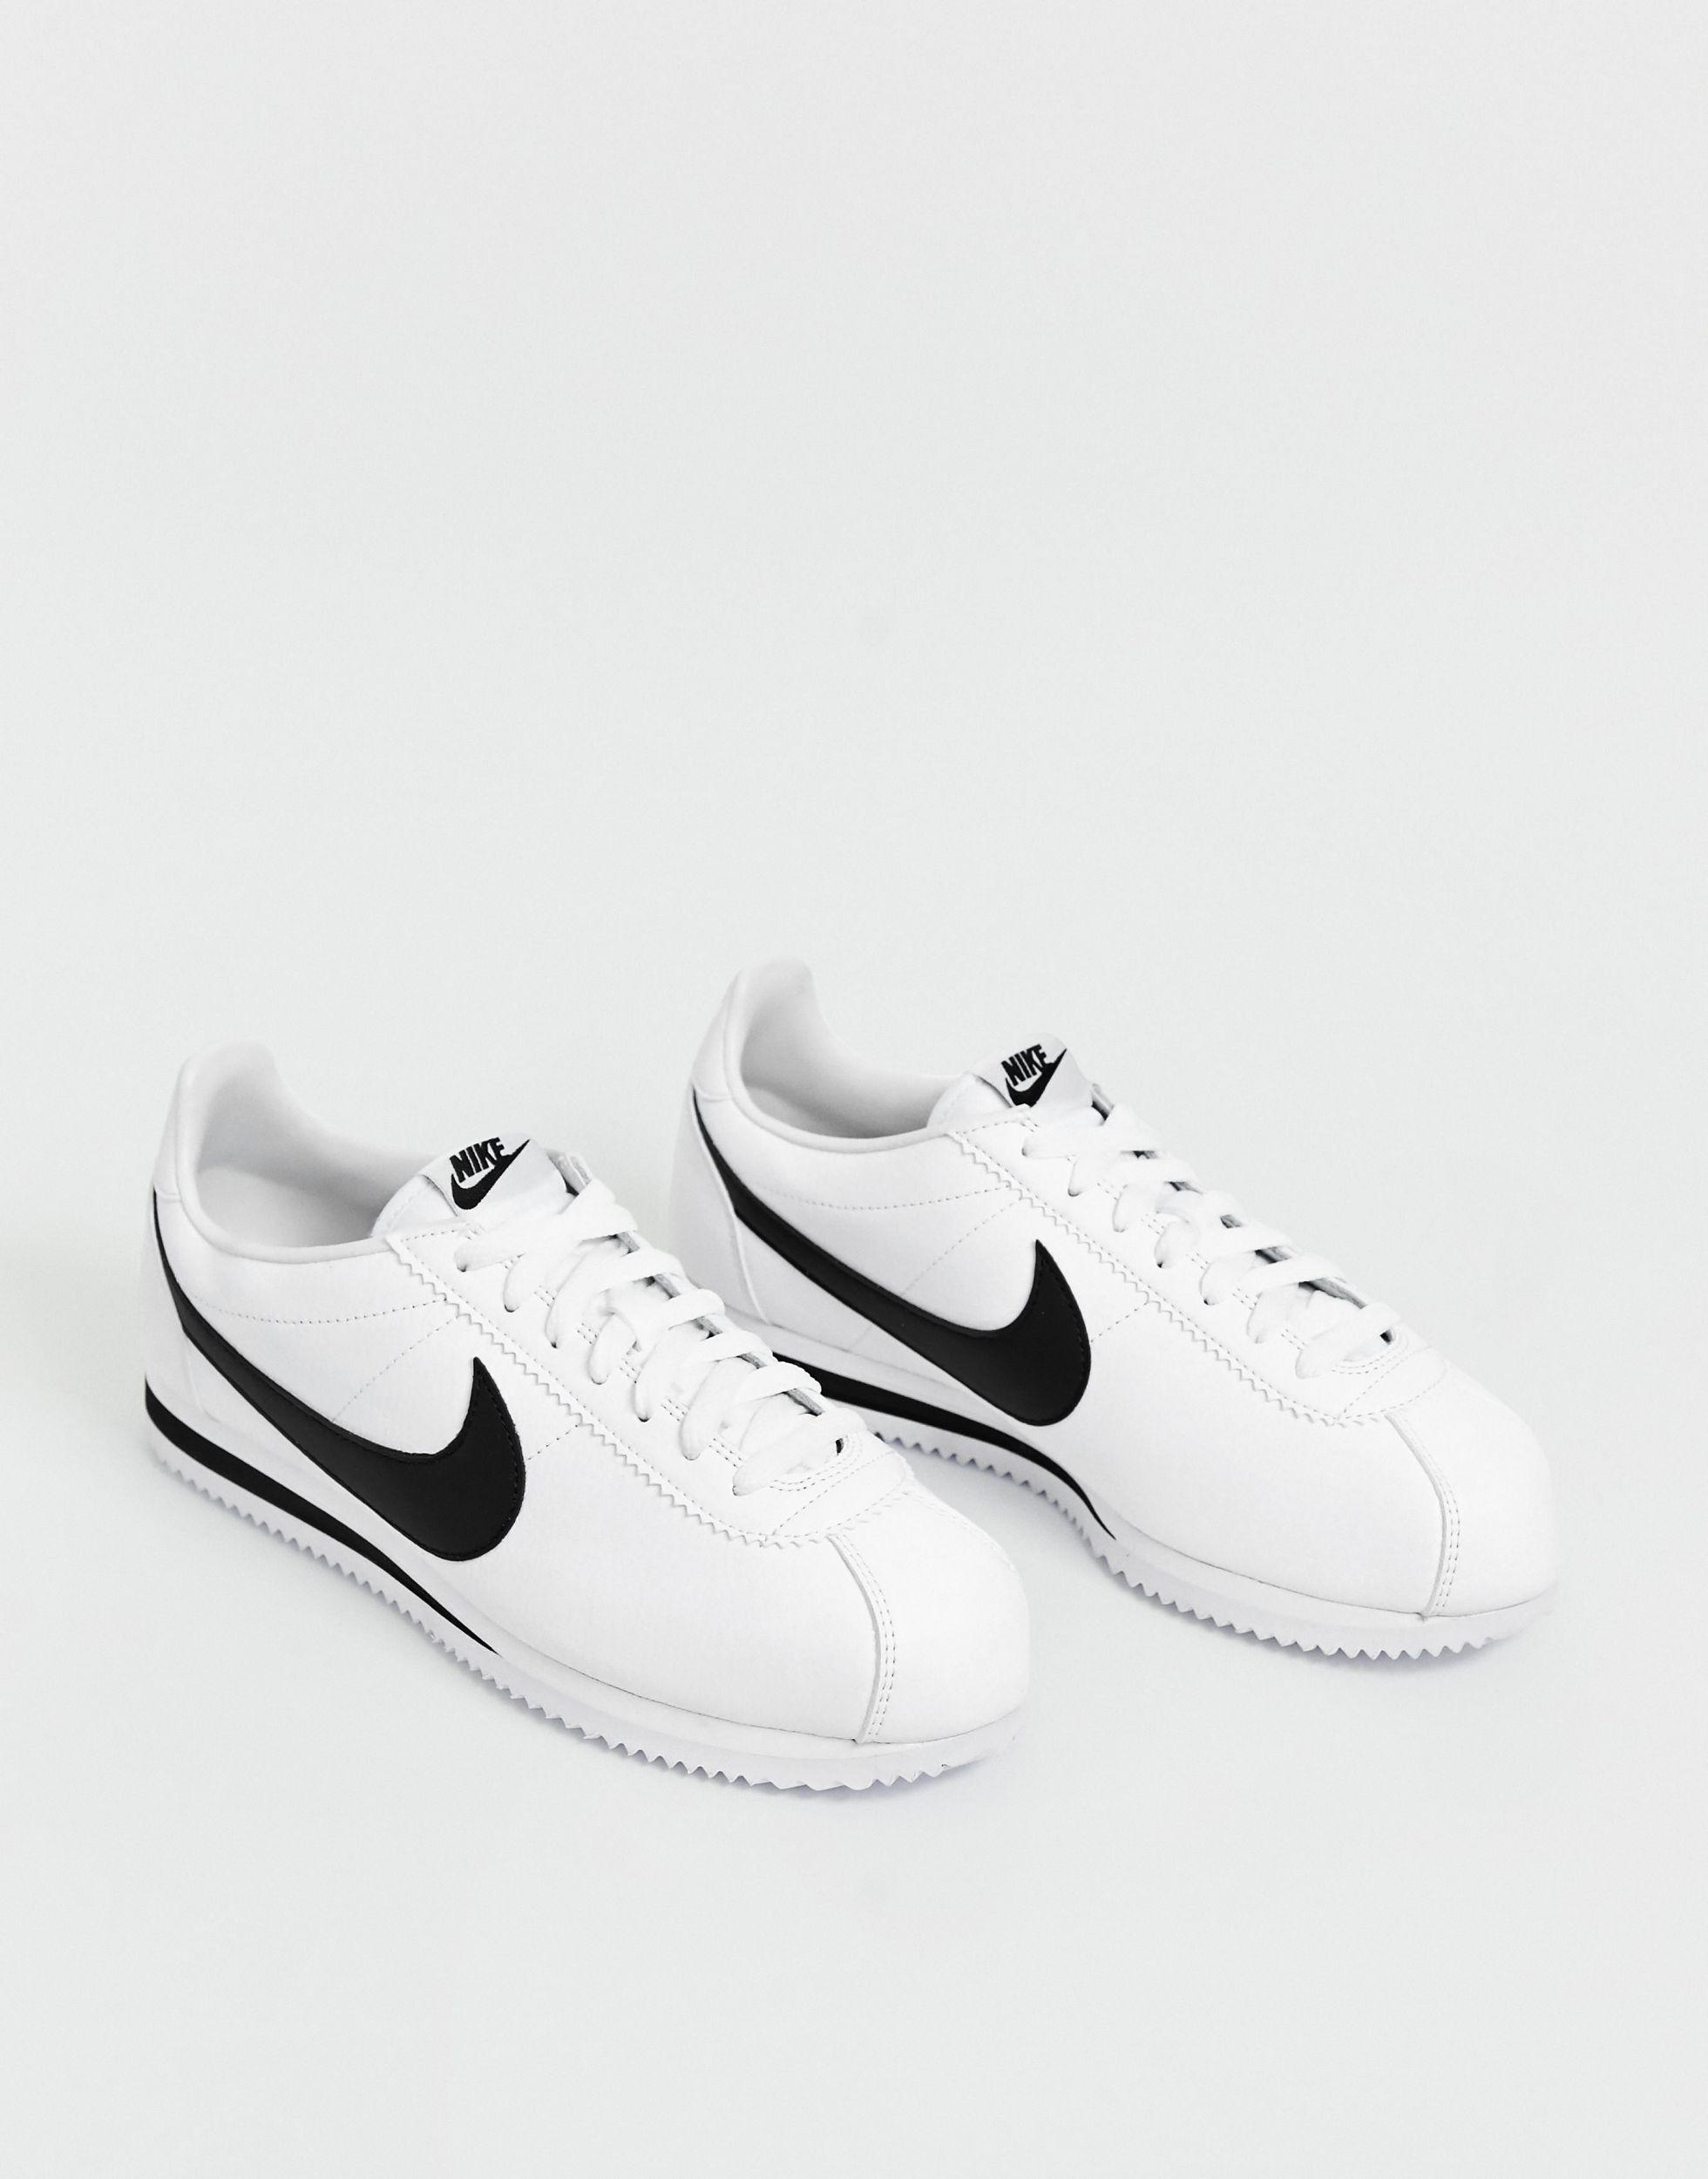 Nike Cortez Basic Leather Og Shoe in White for Men - Lyst